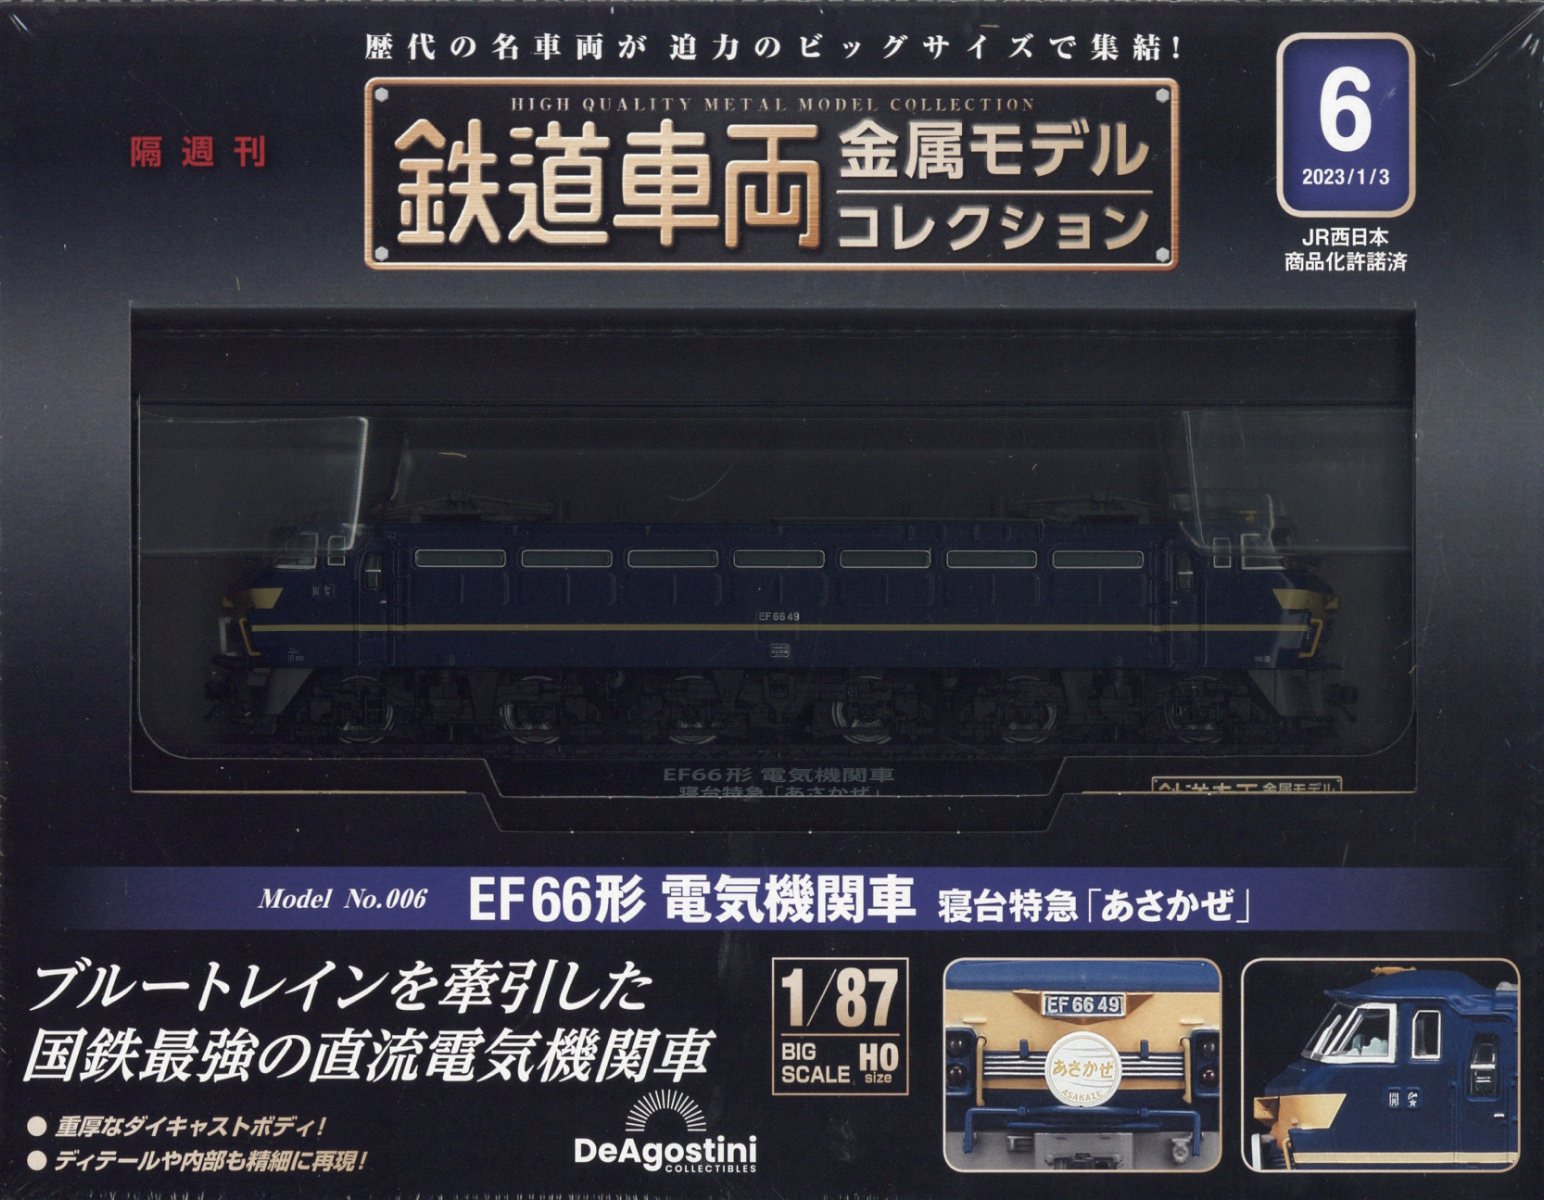 本日特価】 鉄道車両 金属モデルコレクション 6 あさかぜ 鉄道模型 